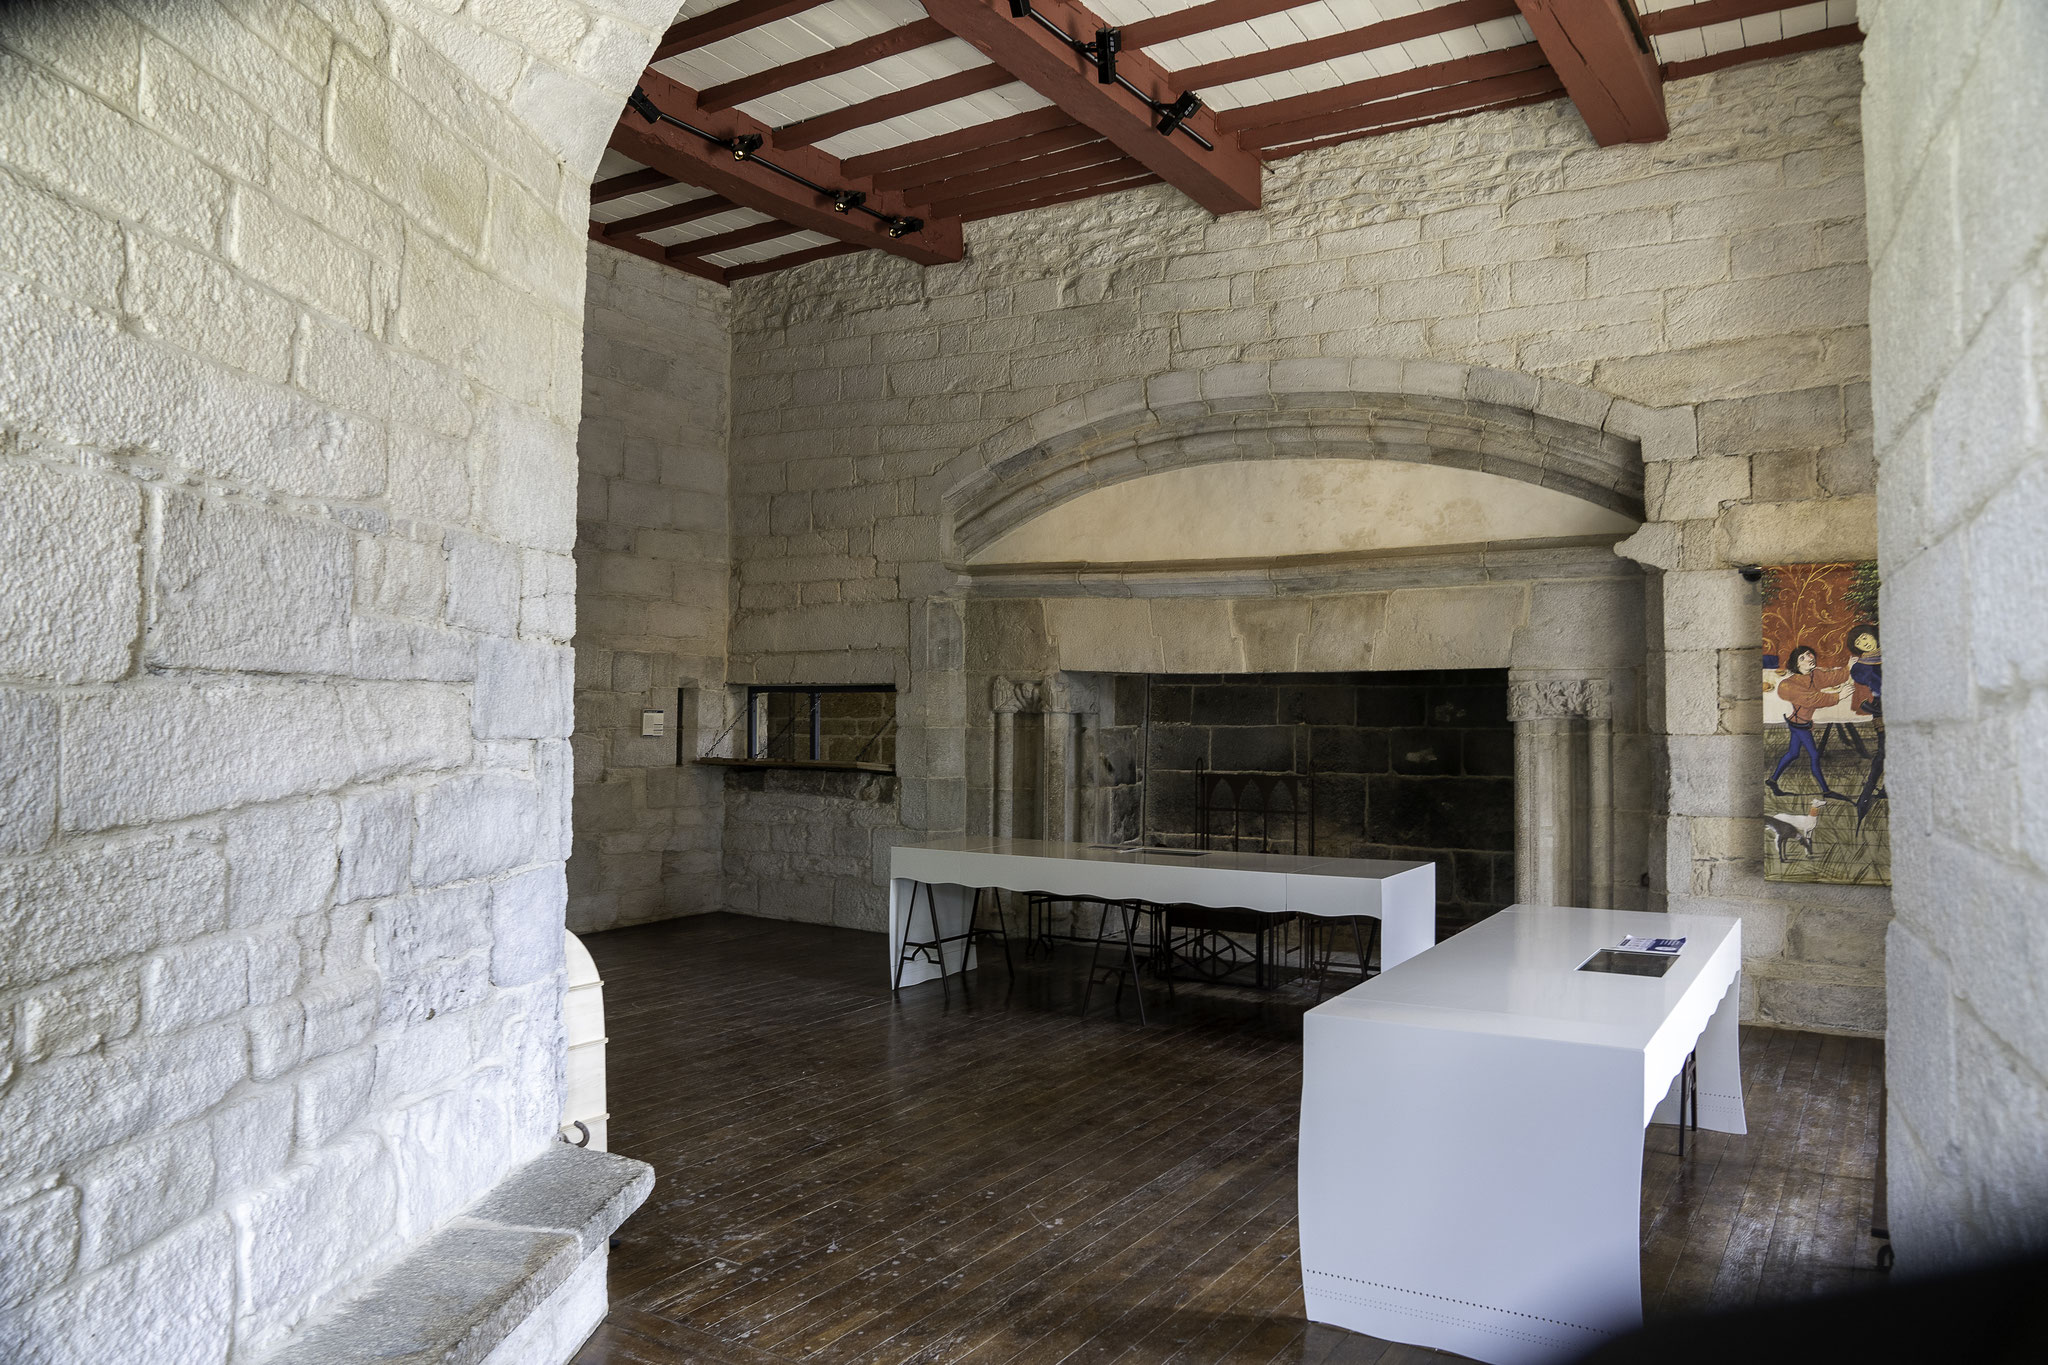 Bild: Der Bankettsaal im Château Dinan